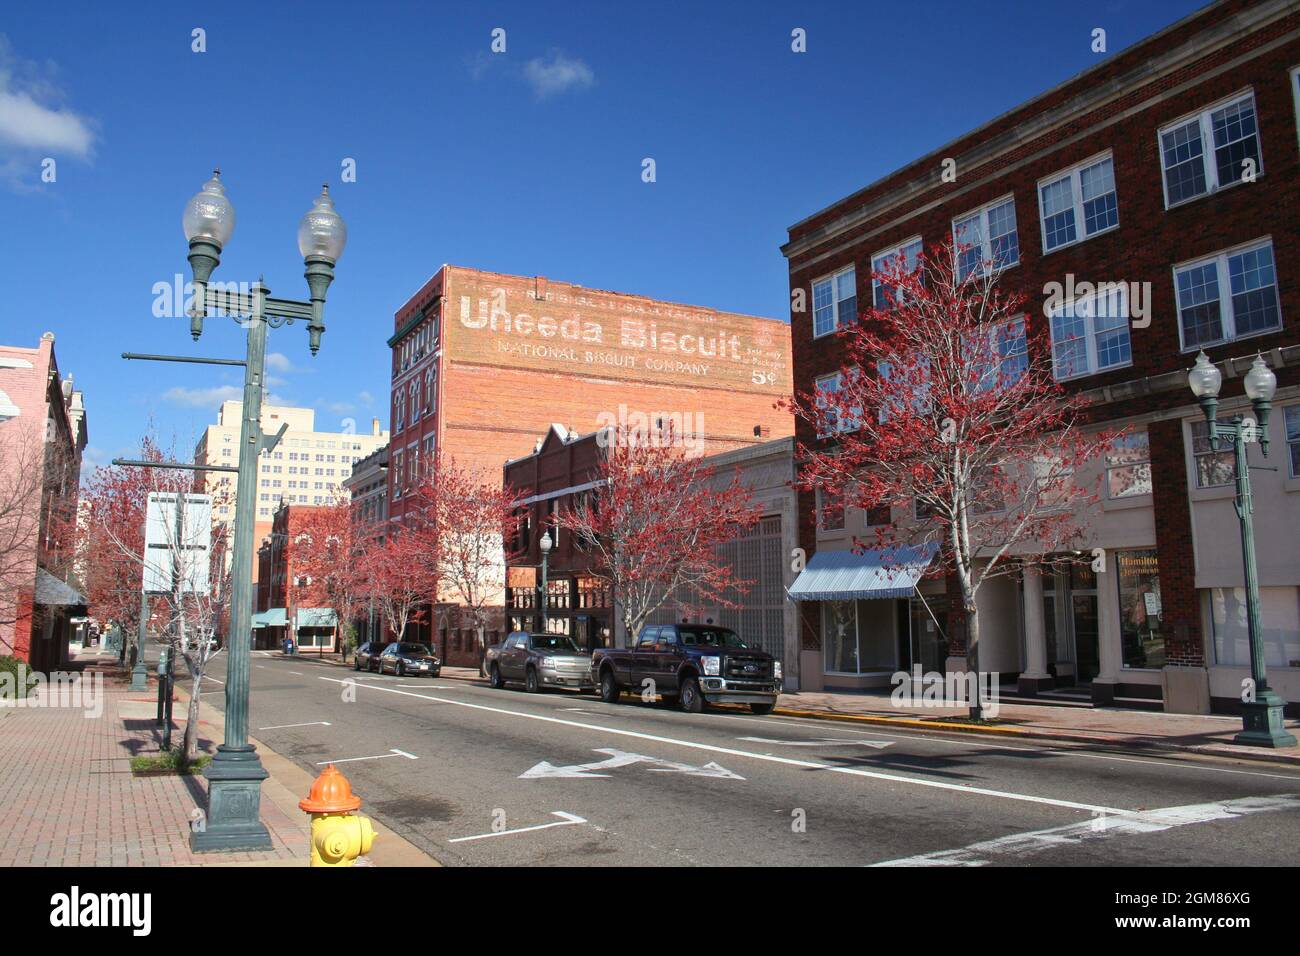 Shreveport, Louisiana - February 18: Buildings in historic downtown Shreveport. Stock Photo